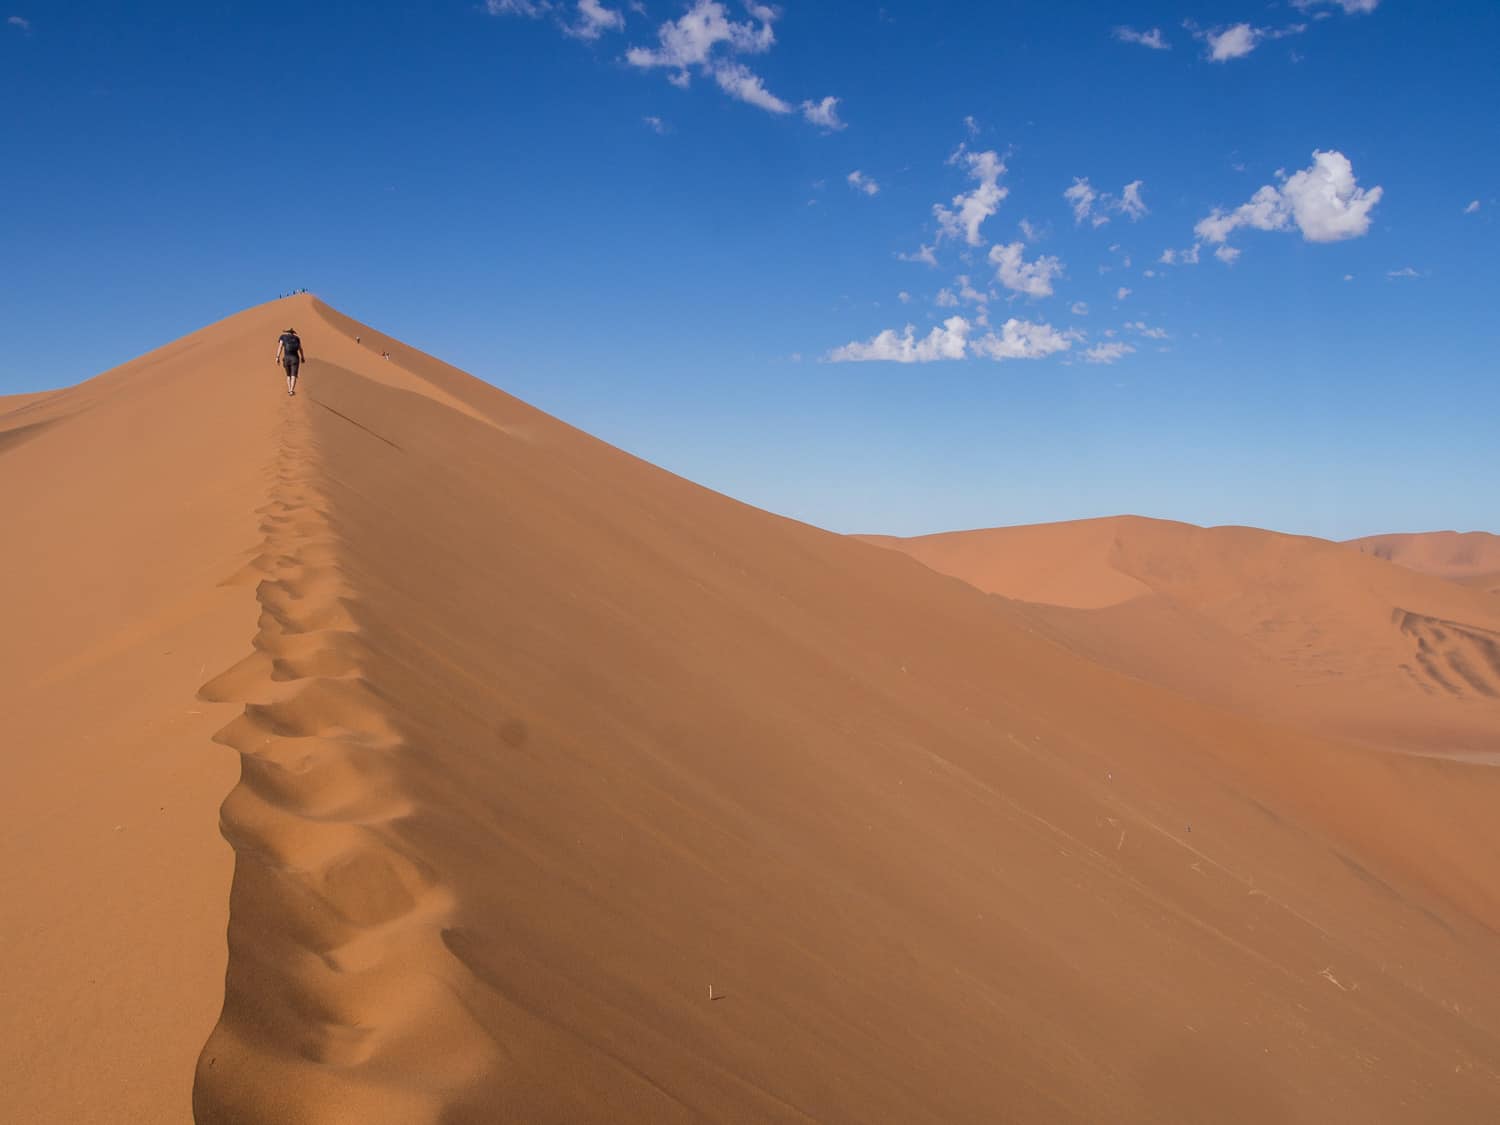 Namibia travel: Climbing Big Daddy Sand Dune at Sossusvlei